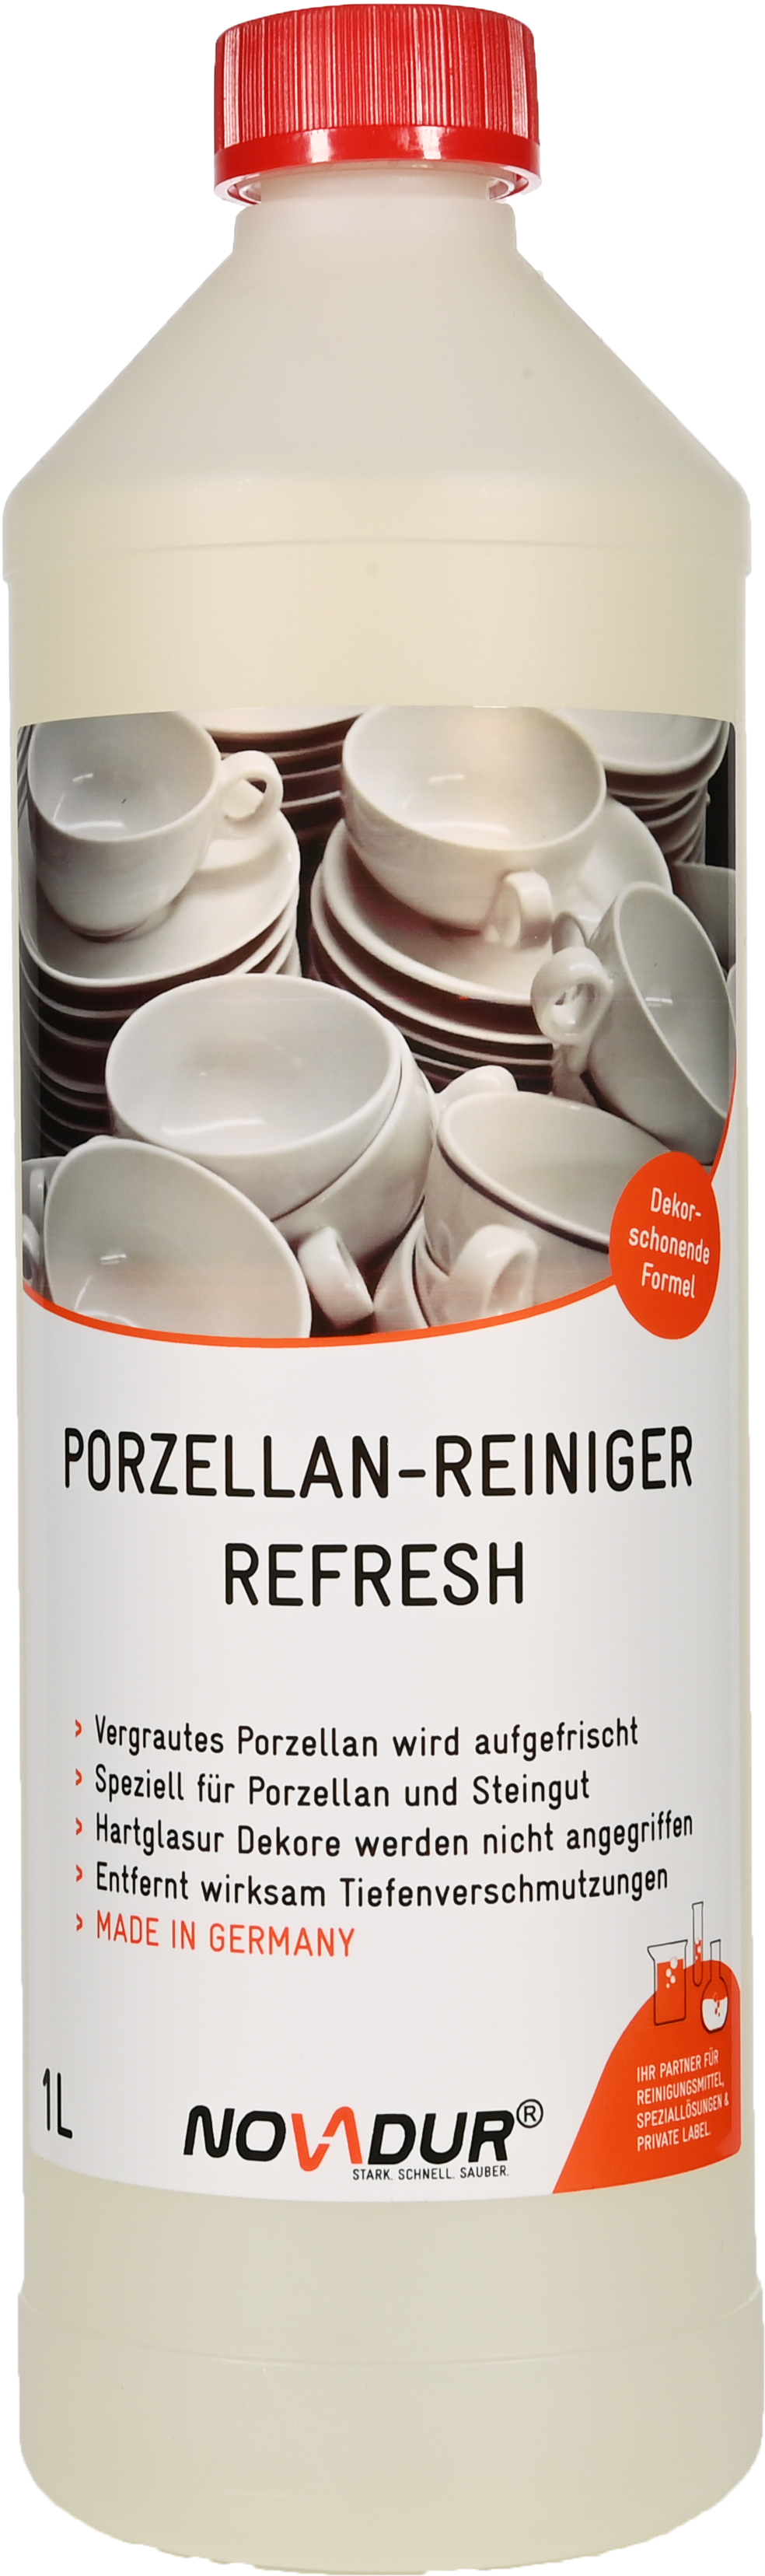 Porzellan-Reiniger Refresh